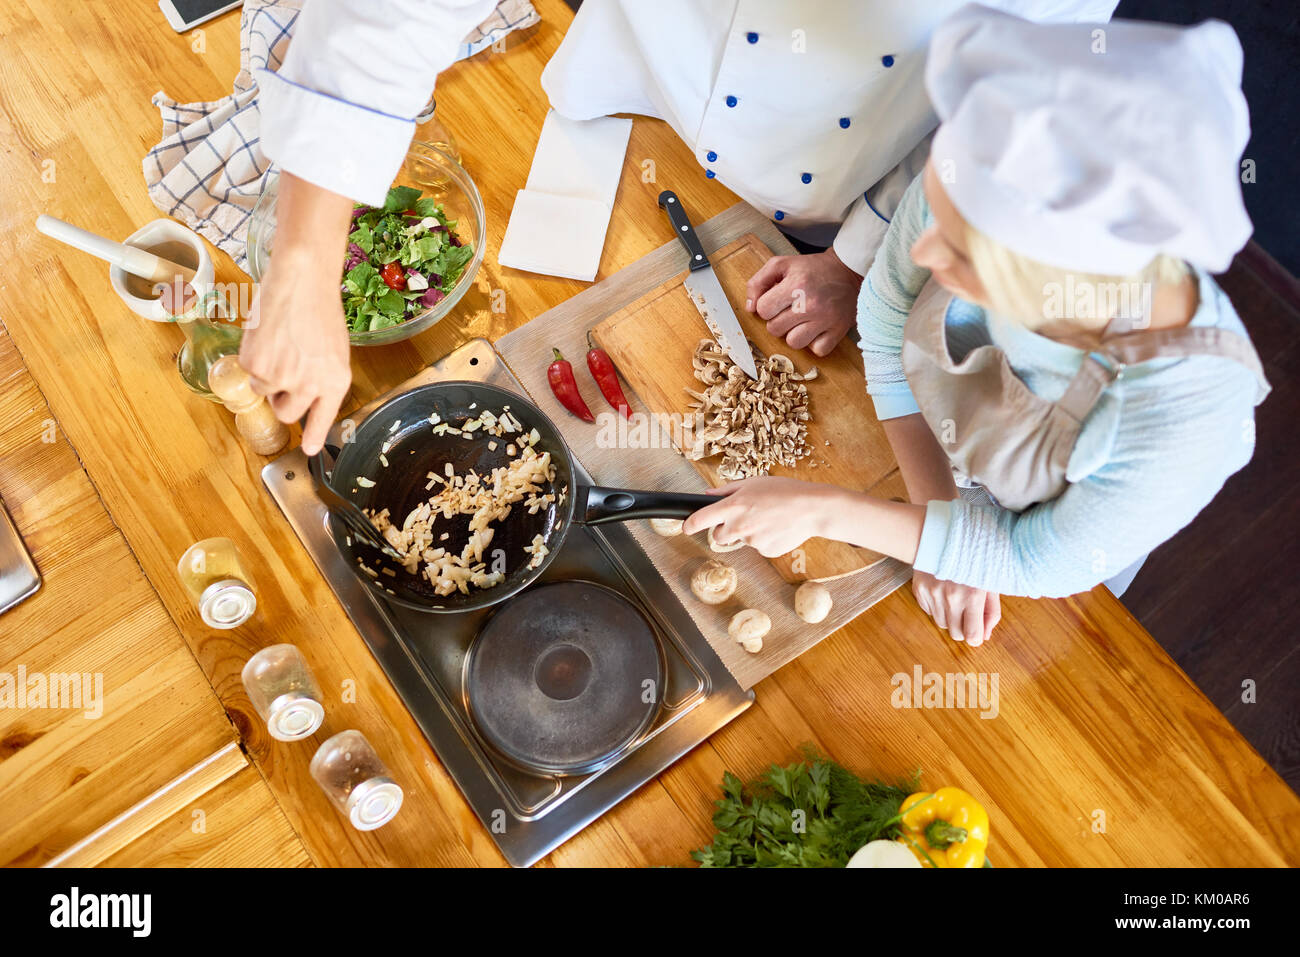 Teamwork at Modern Restaurant Kitchen Stock Photo